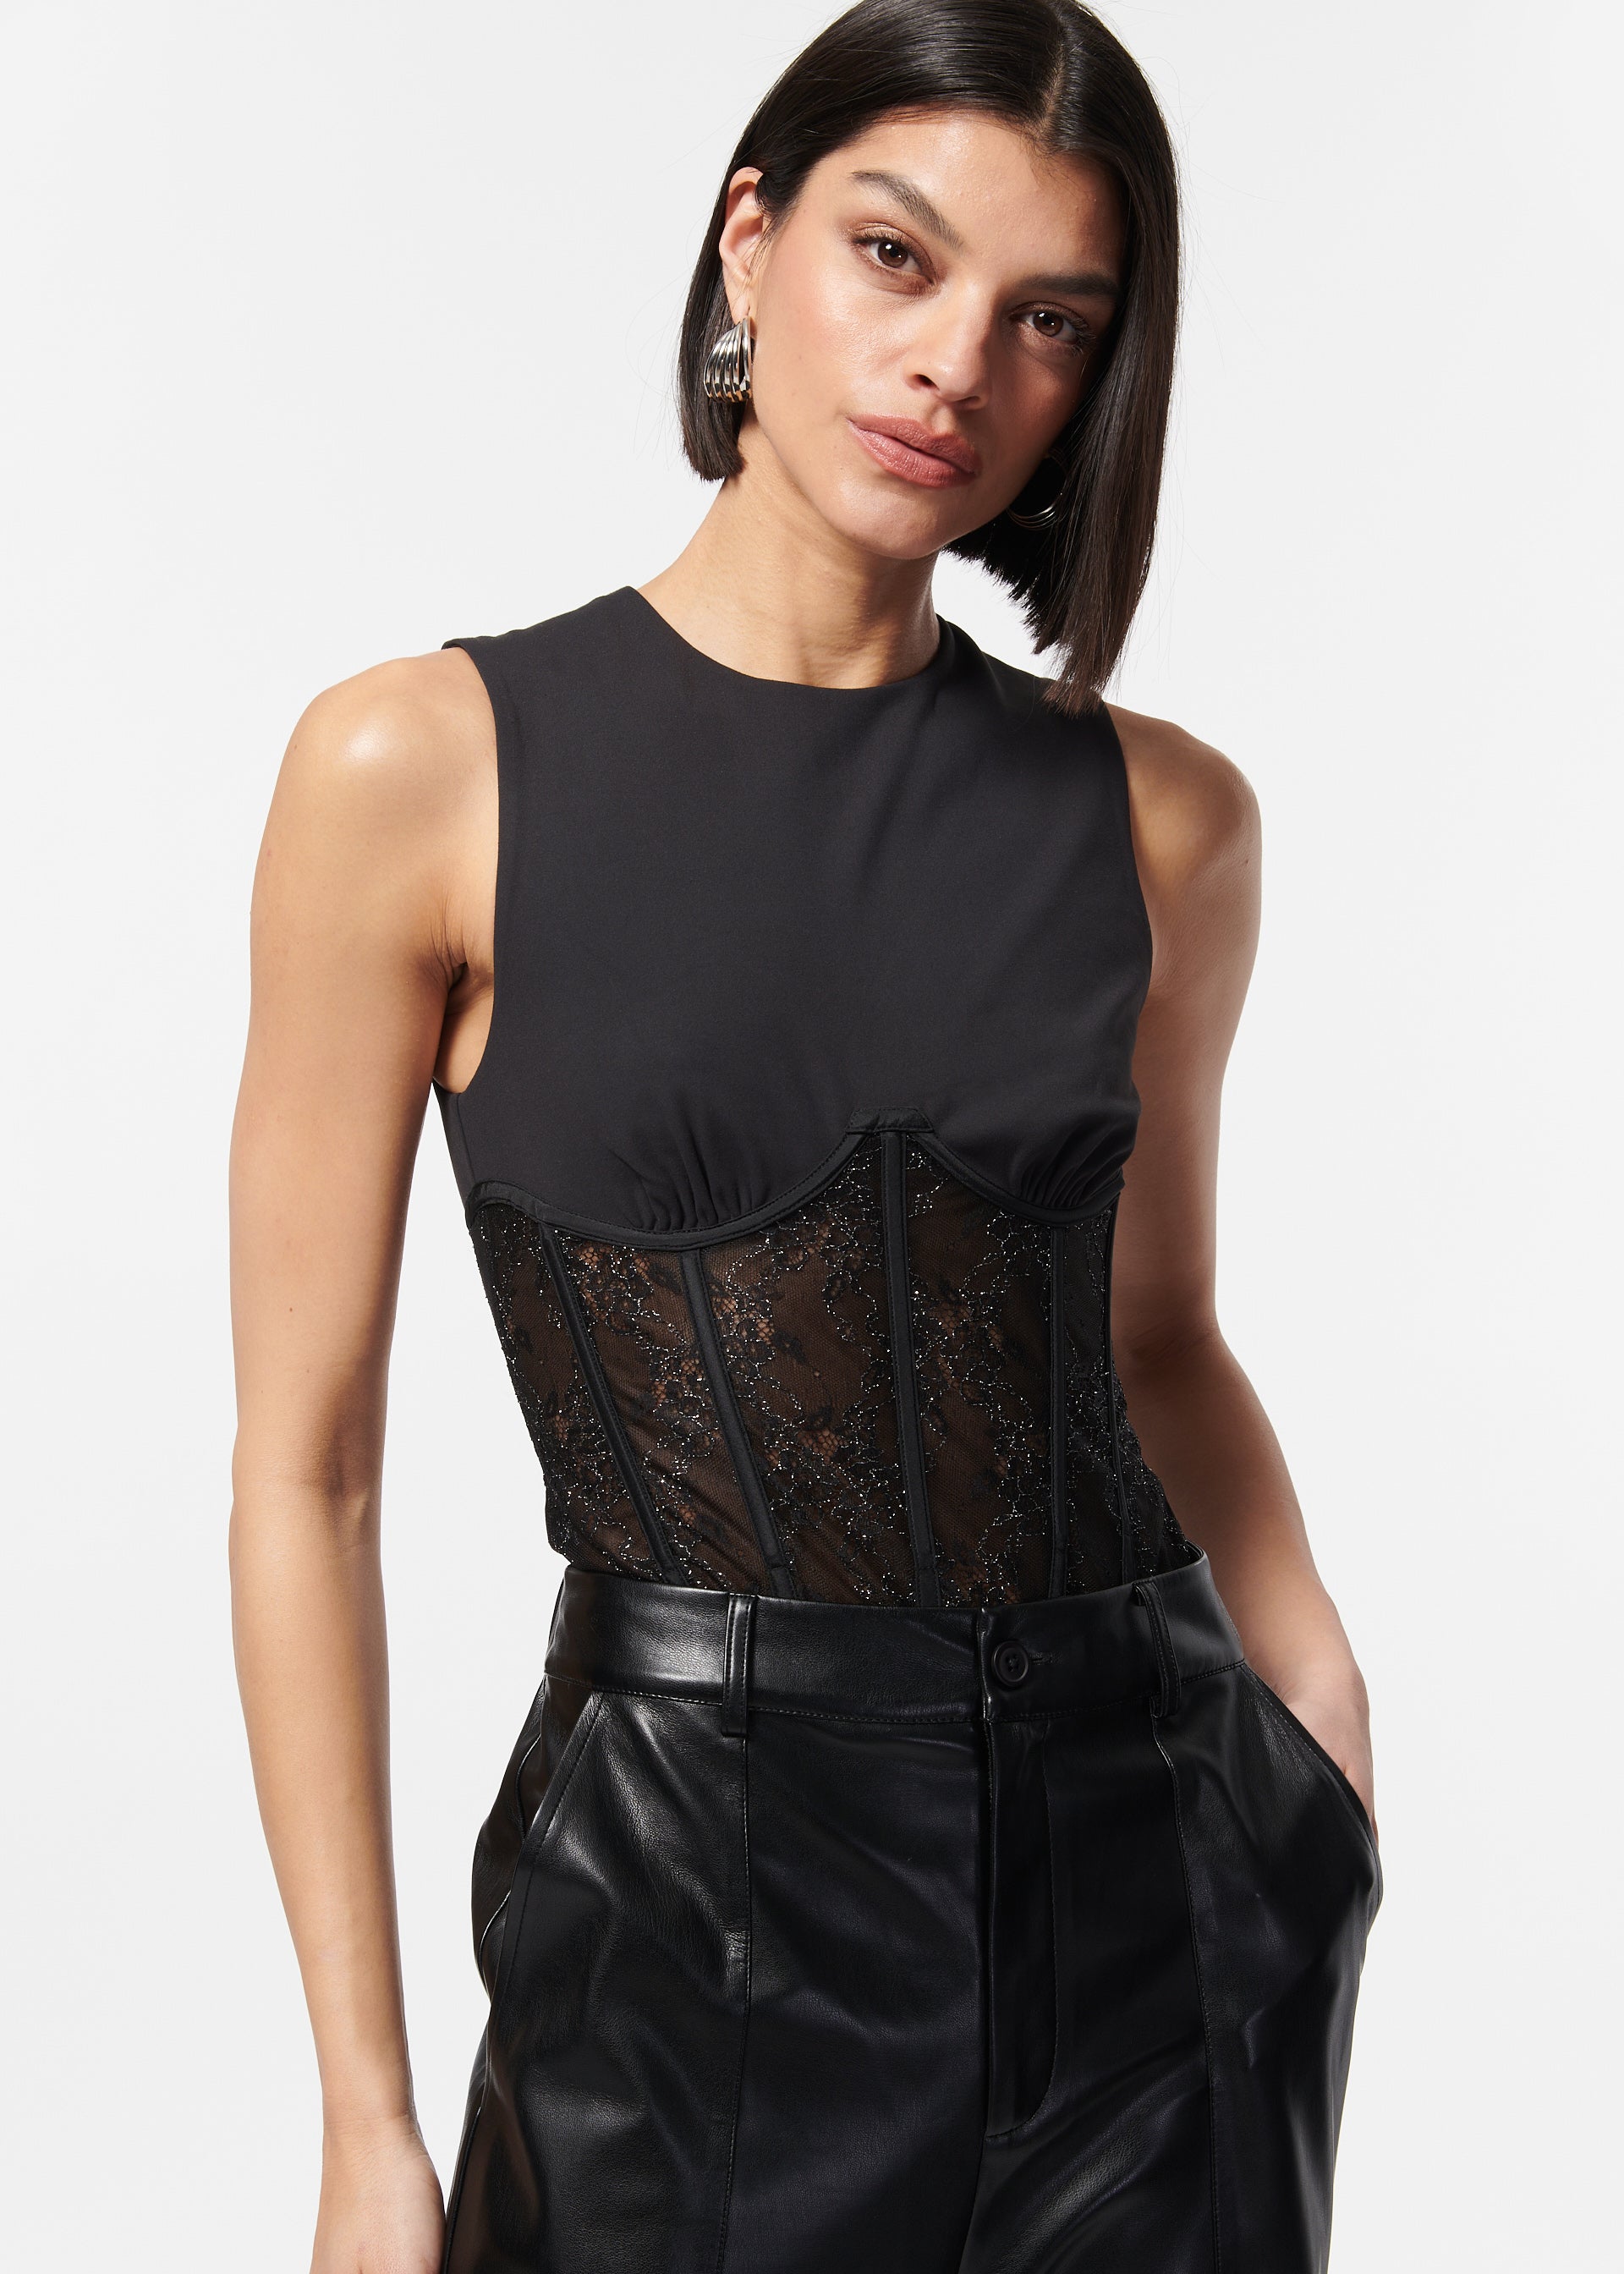 $298 Cami NYC Women's Black Reina Strapless Lace Bodysuit Size X